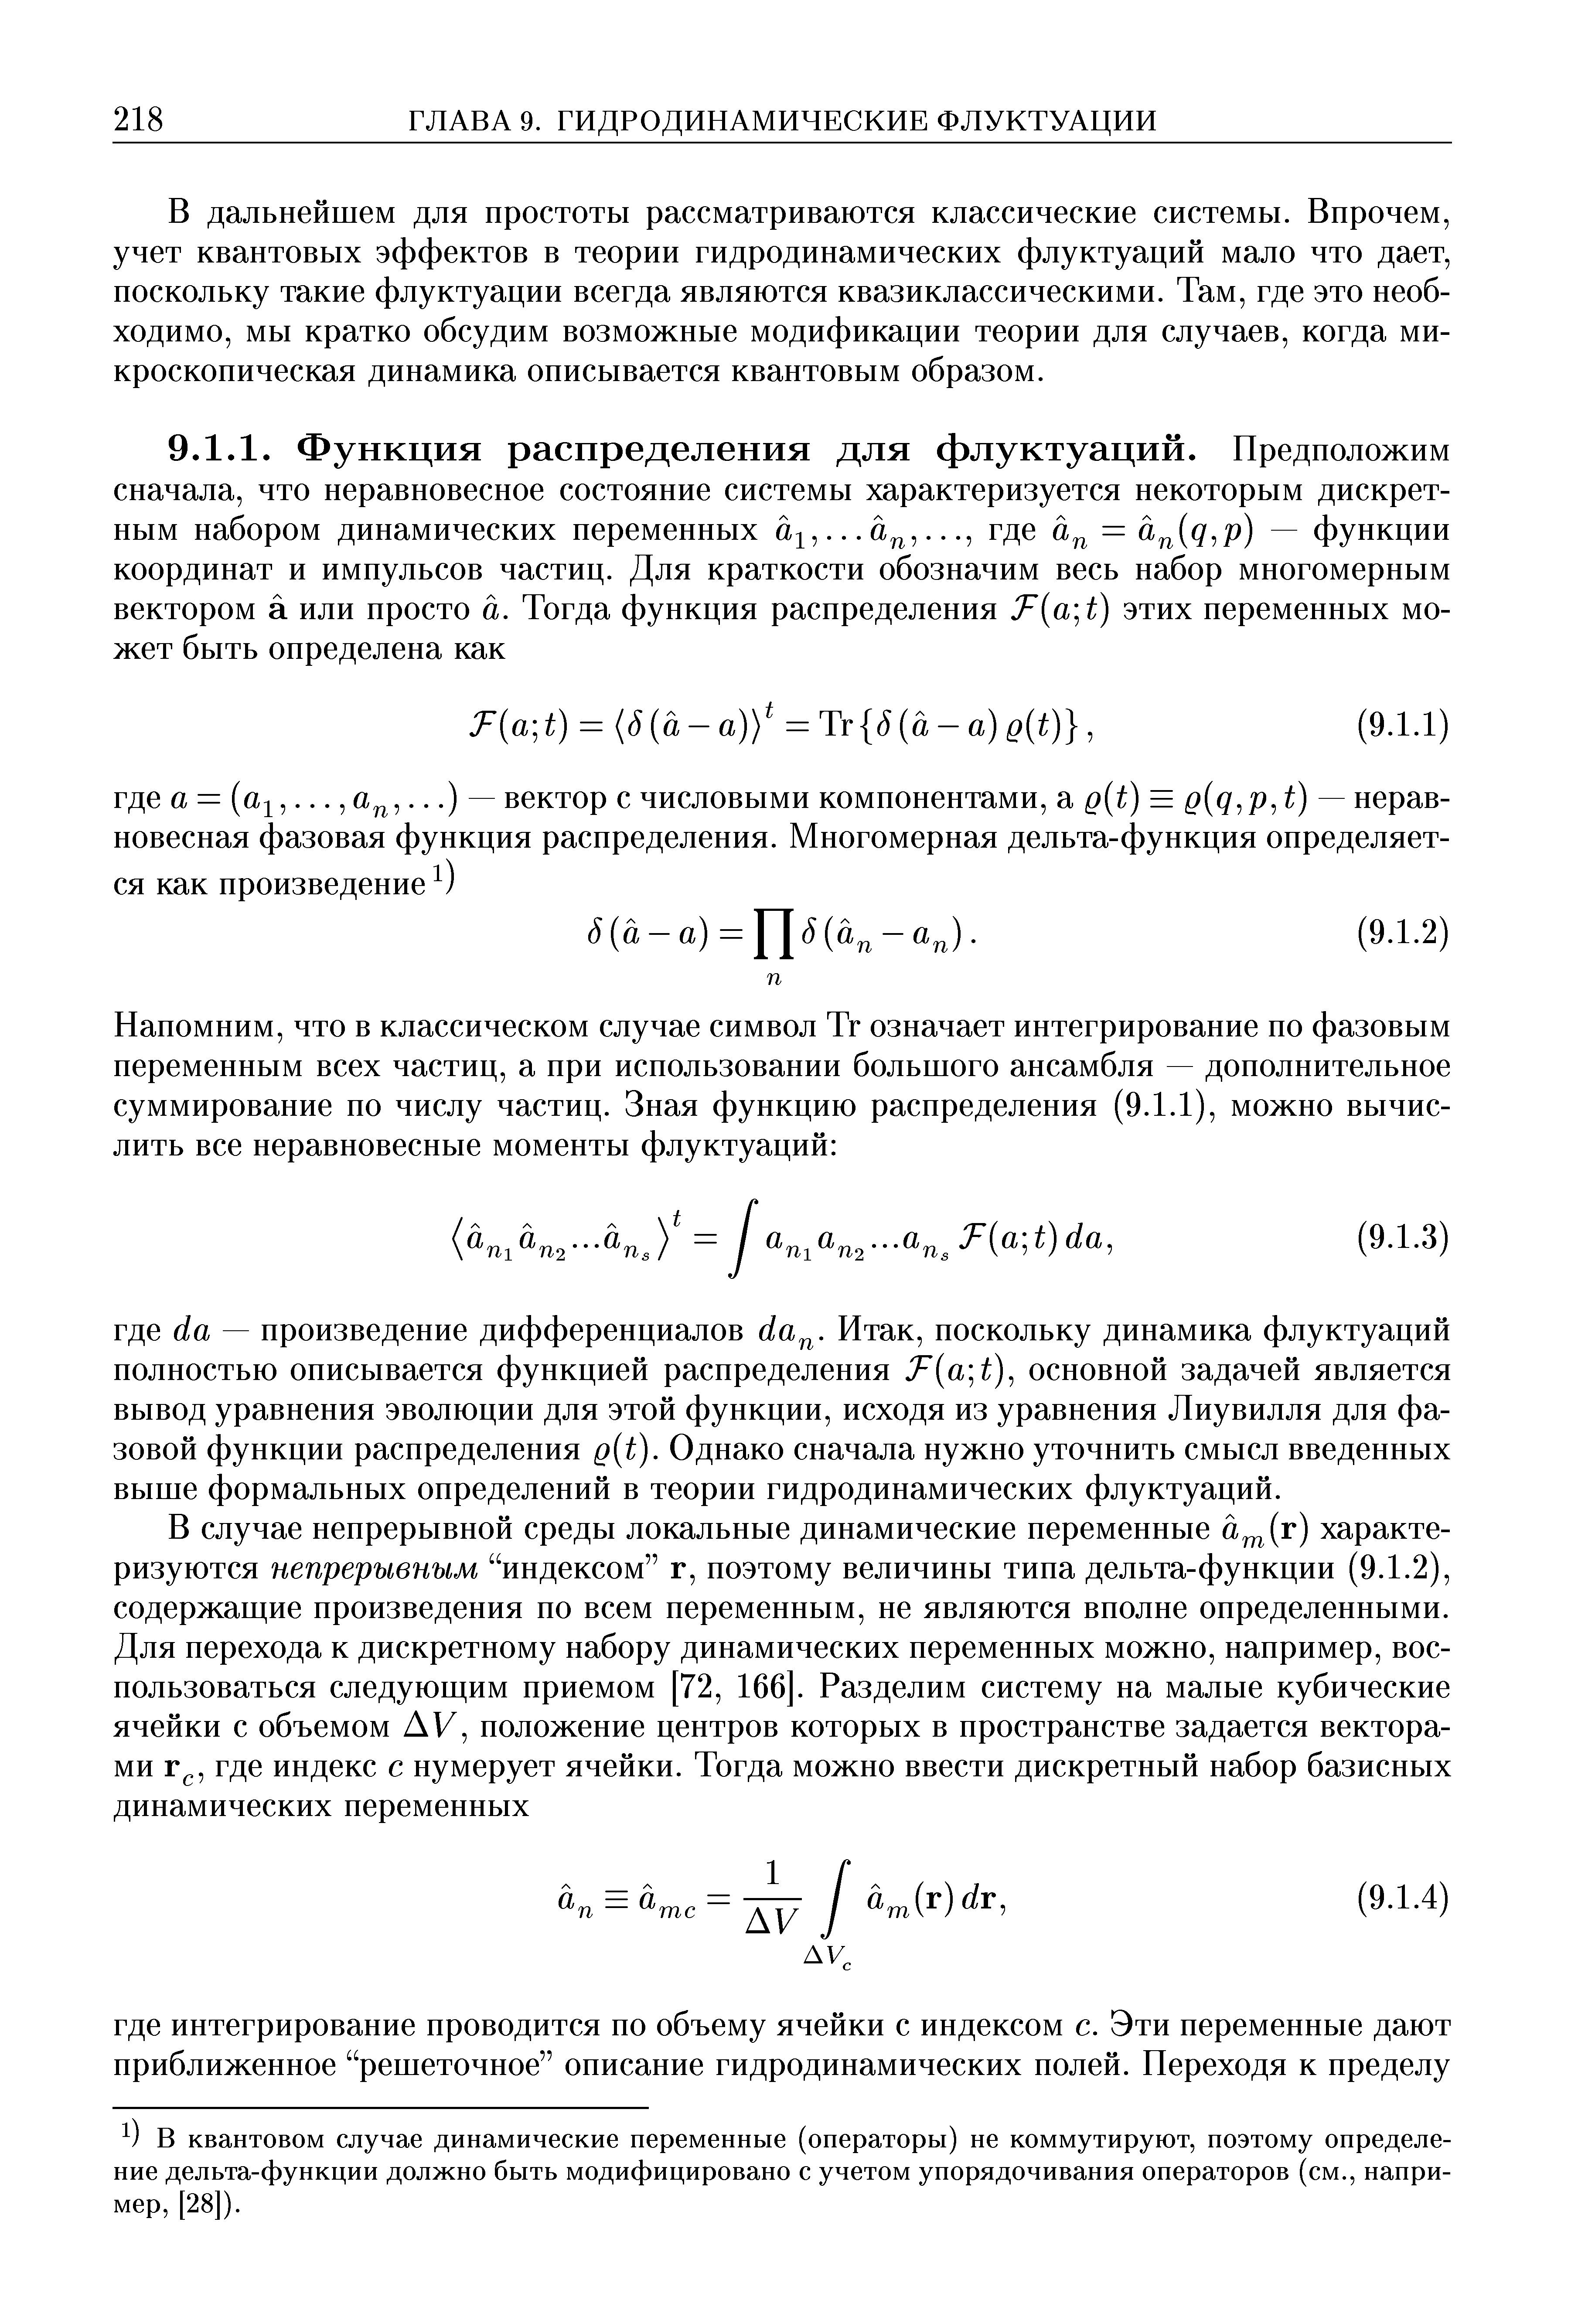 В квантовом случае динамические переменные (операторы) не коммутируют, поэтому определение дельта-функции должно быть модифицировано с учетом упорядочивания операторов (см., например, [28]).
